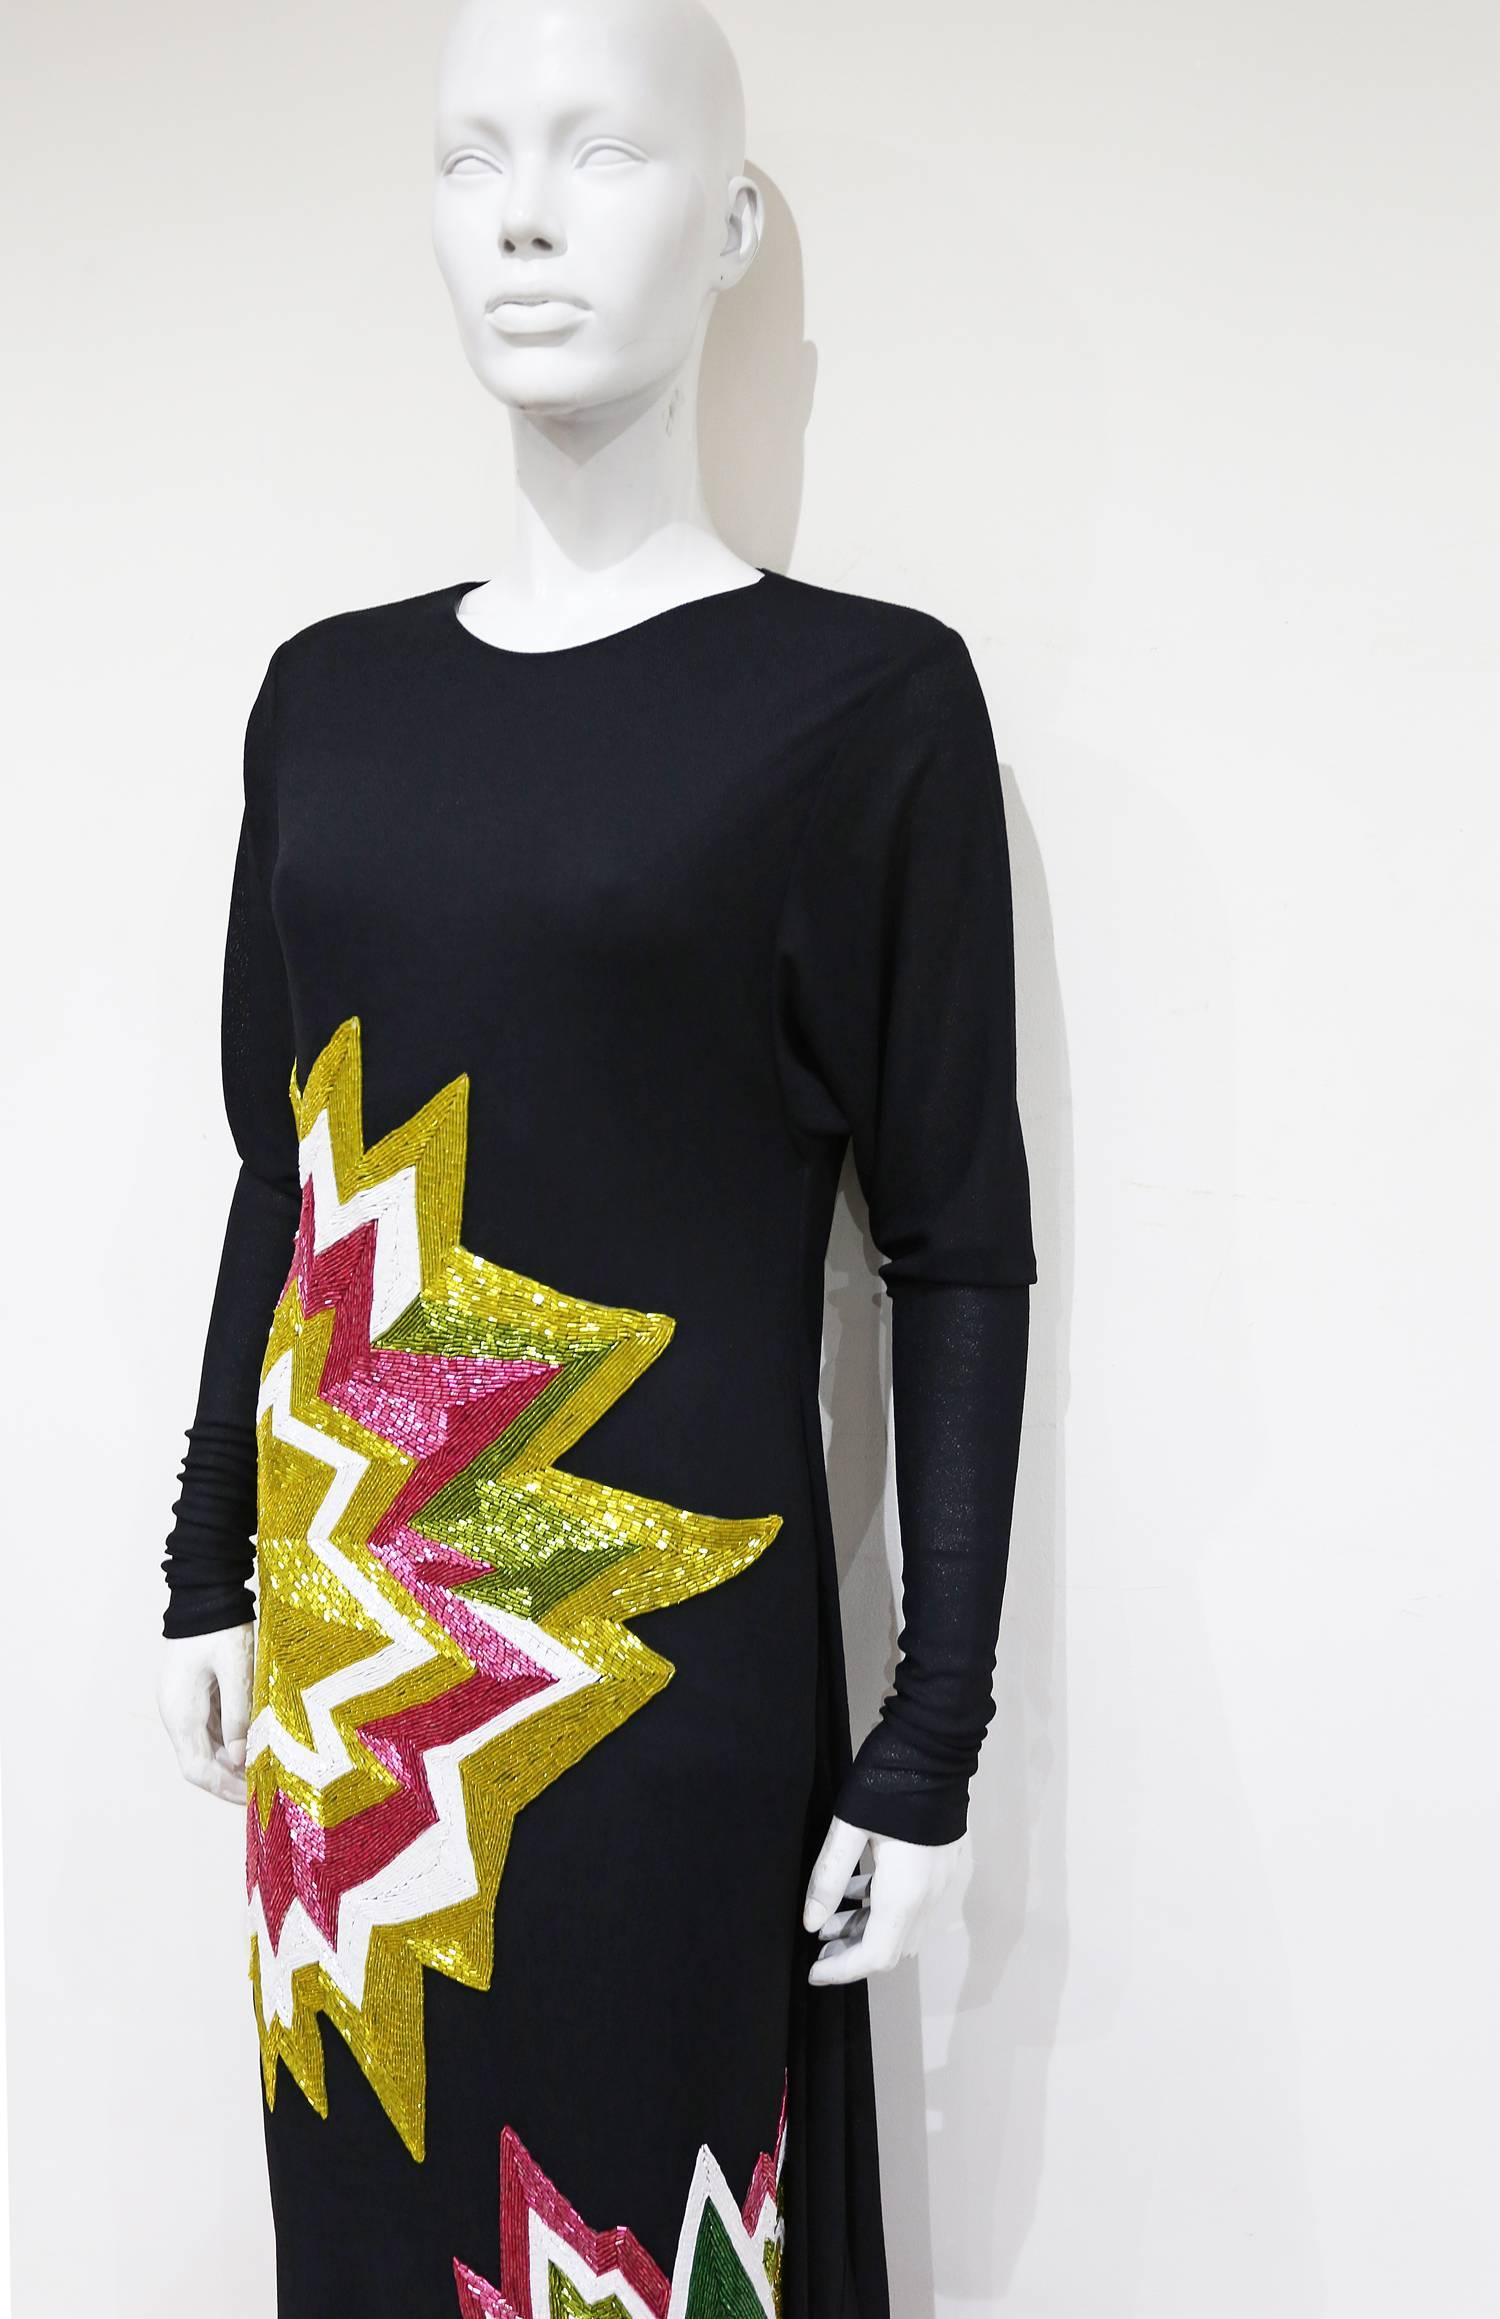 Tom Ford Embellished Pop Art Inspired Black Evening Dress, C. 2013 1